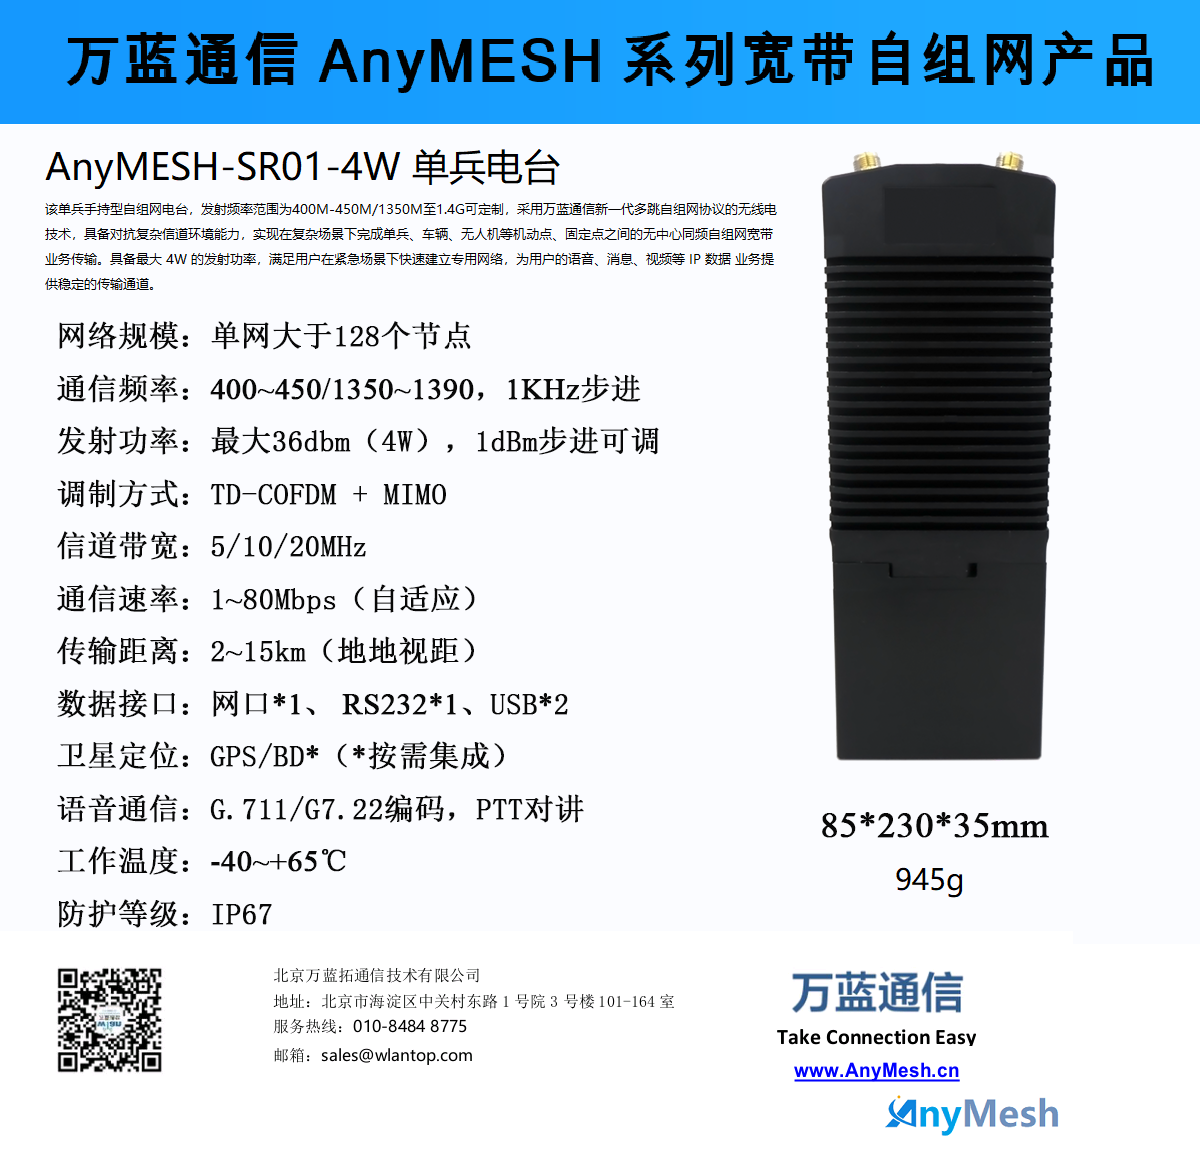 AnyMESH-AR01-4W 1.4Ghz COFDM MI